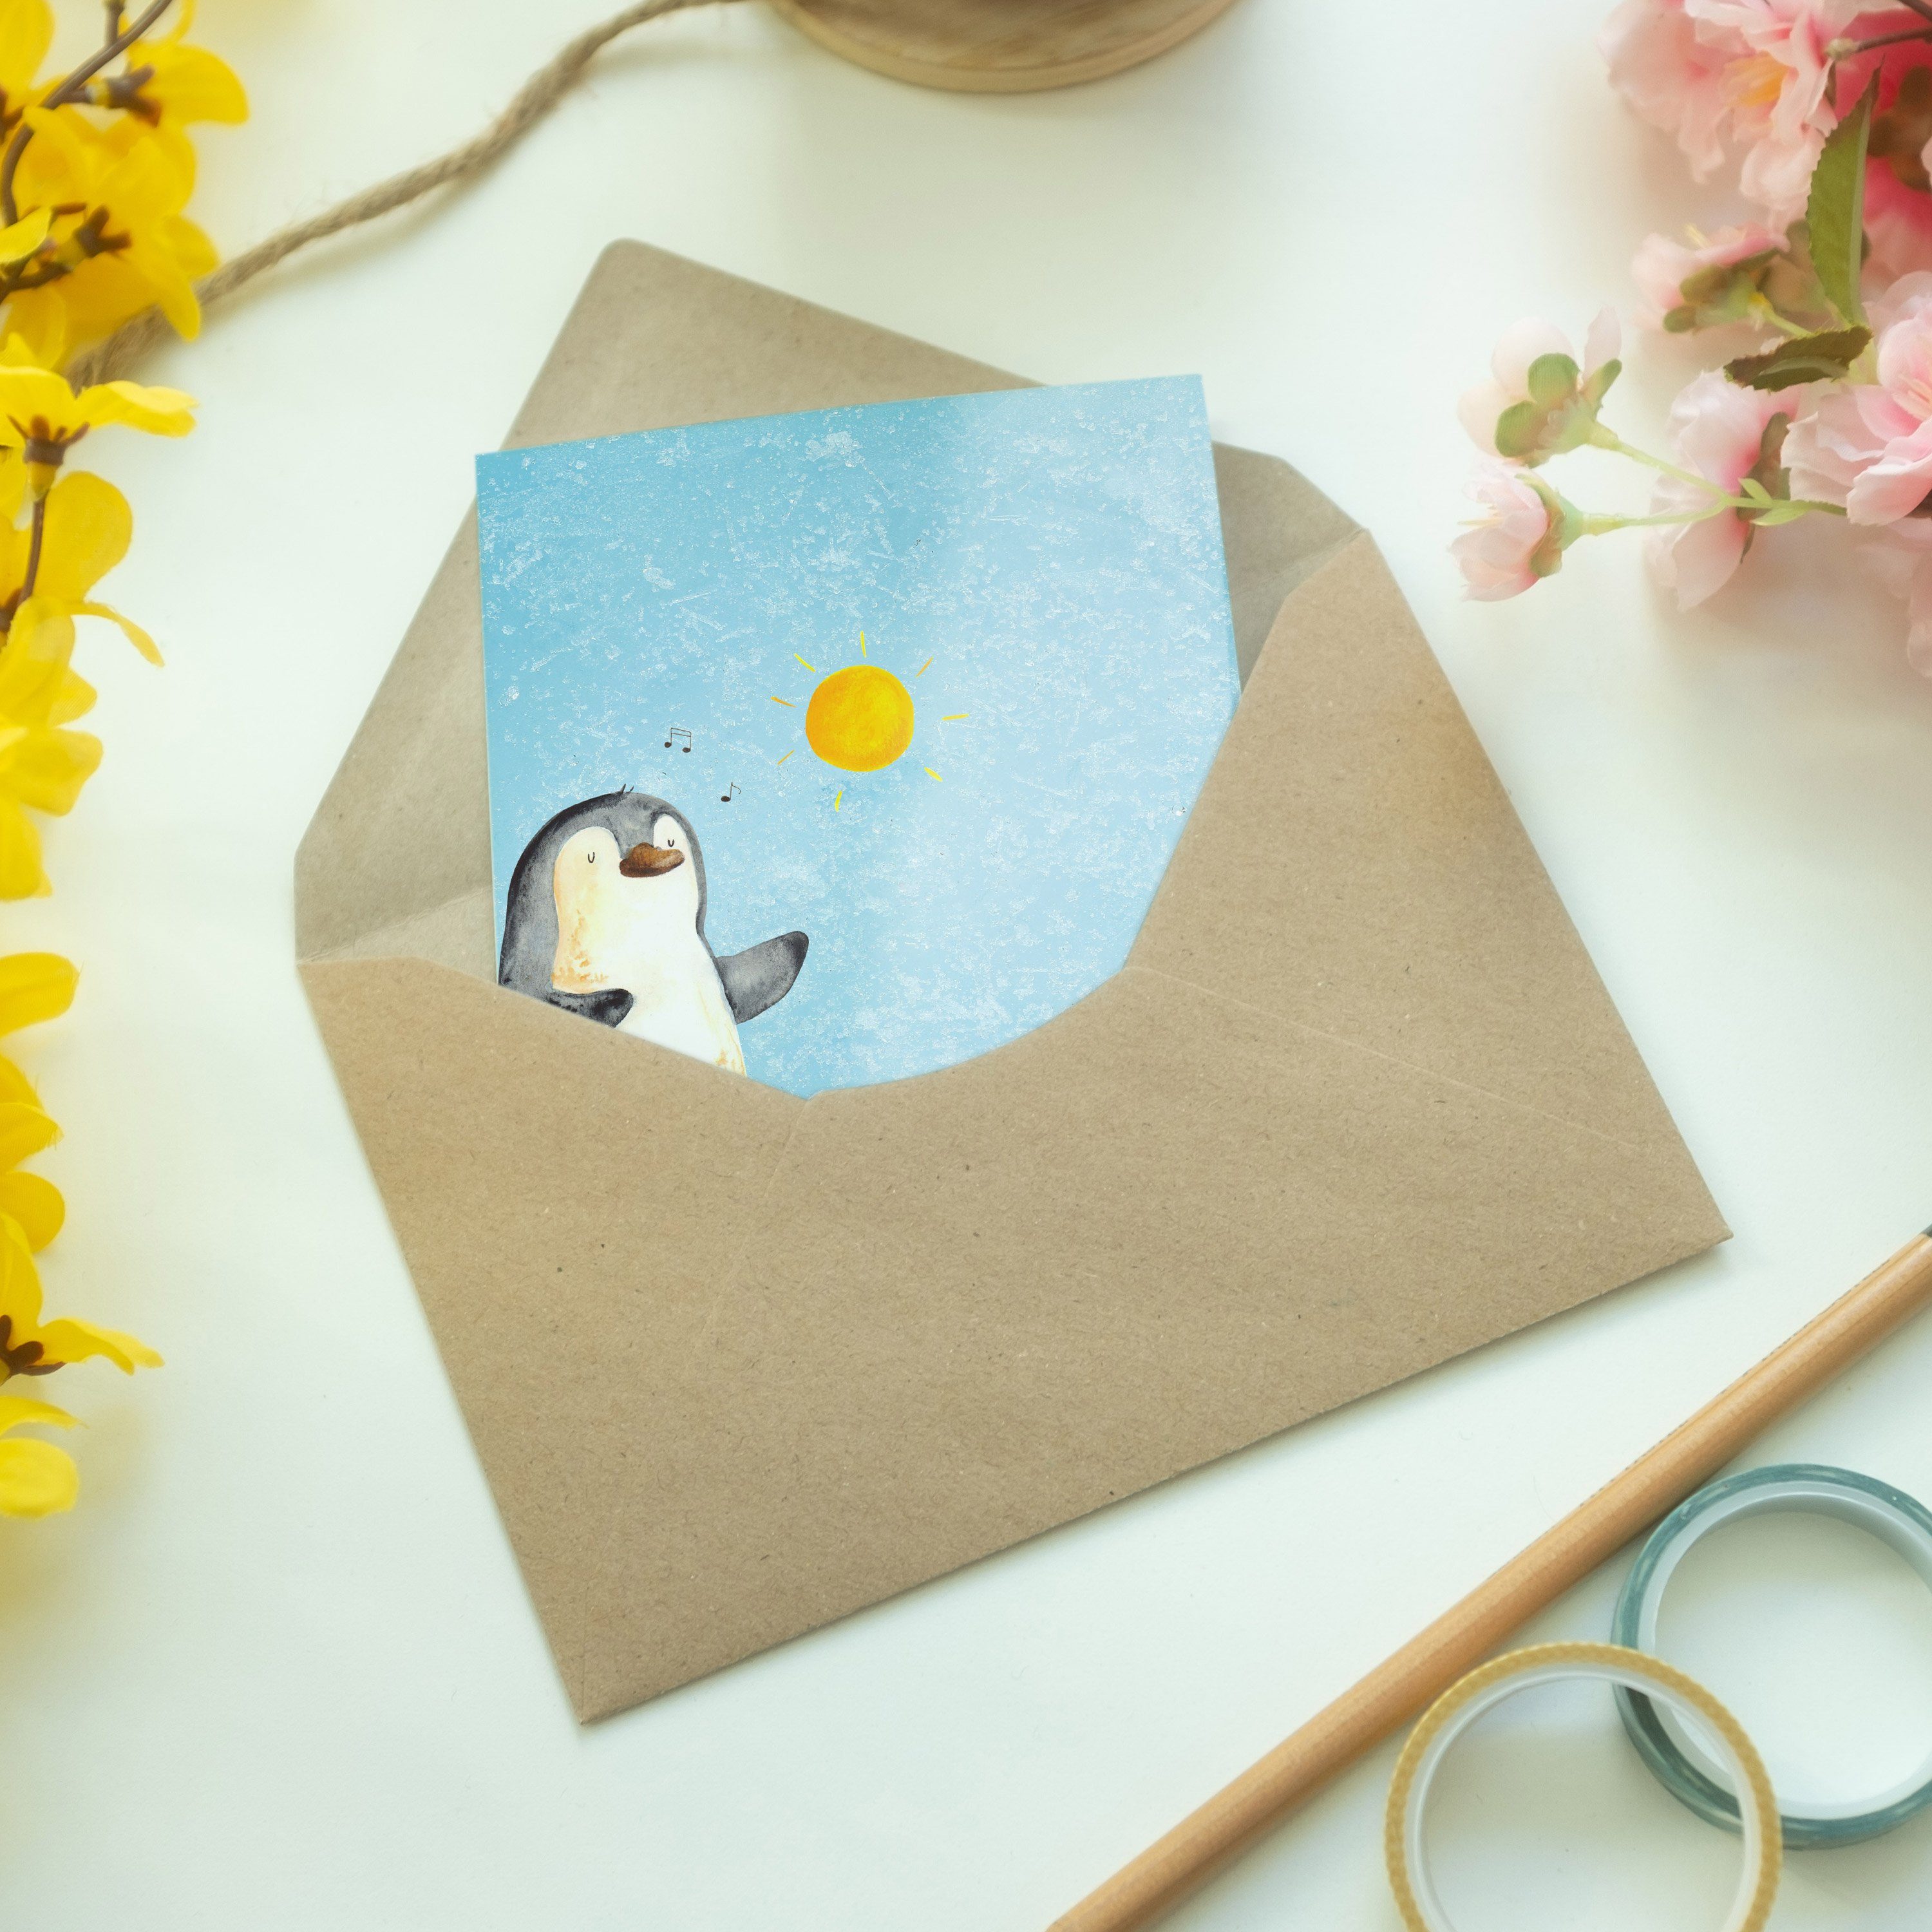 Mr. Portugal, - Mrs. Eisblau Pinguin & Geschenk, Hochzeitskarte Urlaub, Panda Grußkarte - Surfer